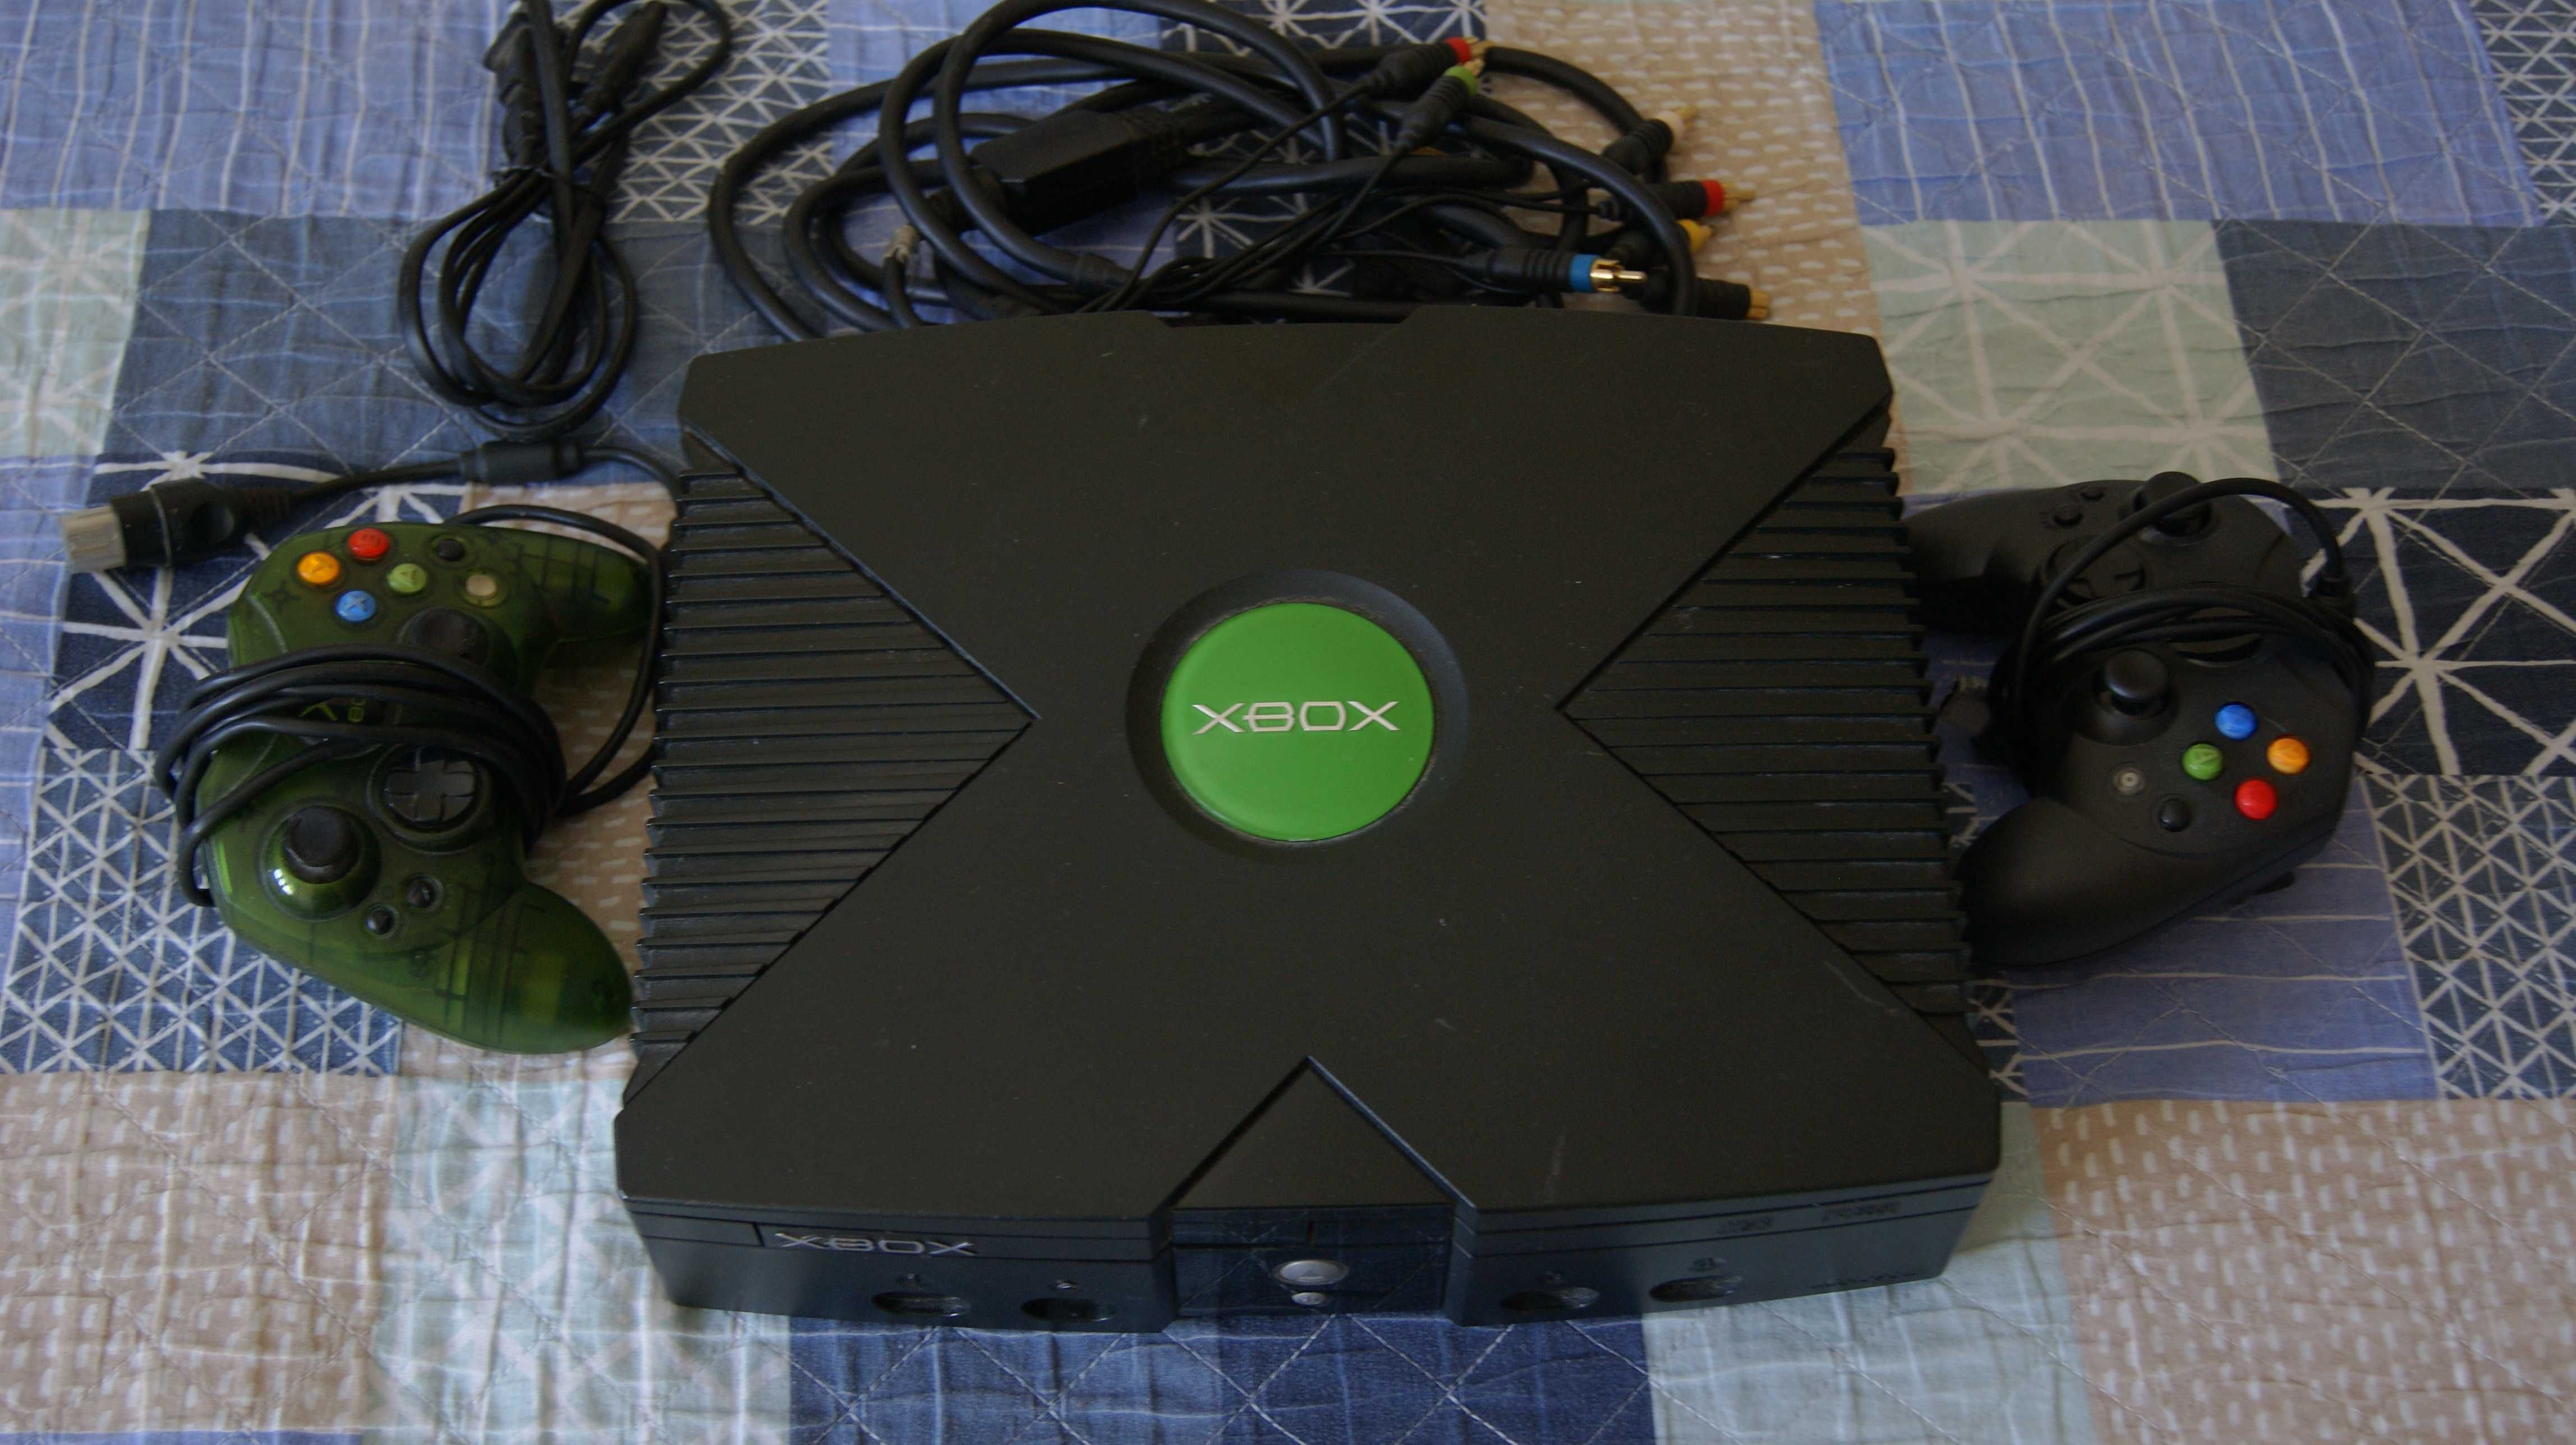 Consola XBOX original c/ HDD SATA (mais rápido) (consola 120v)